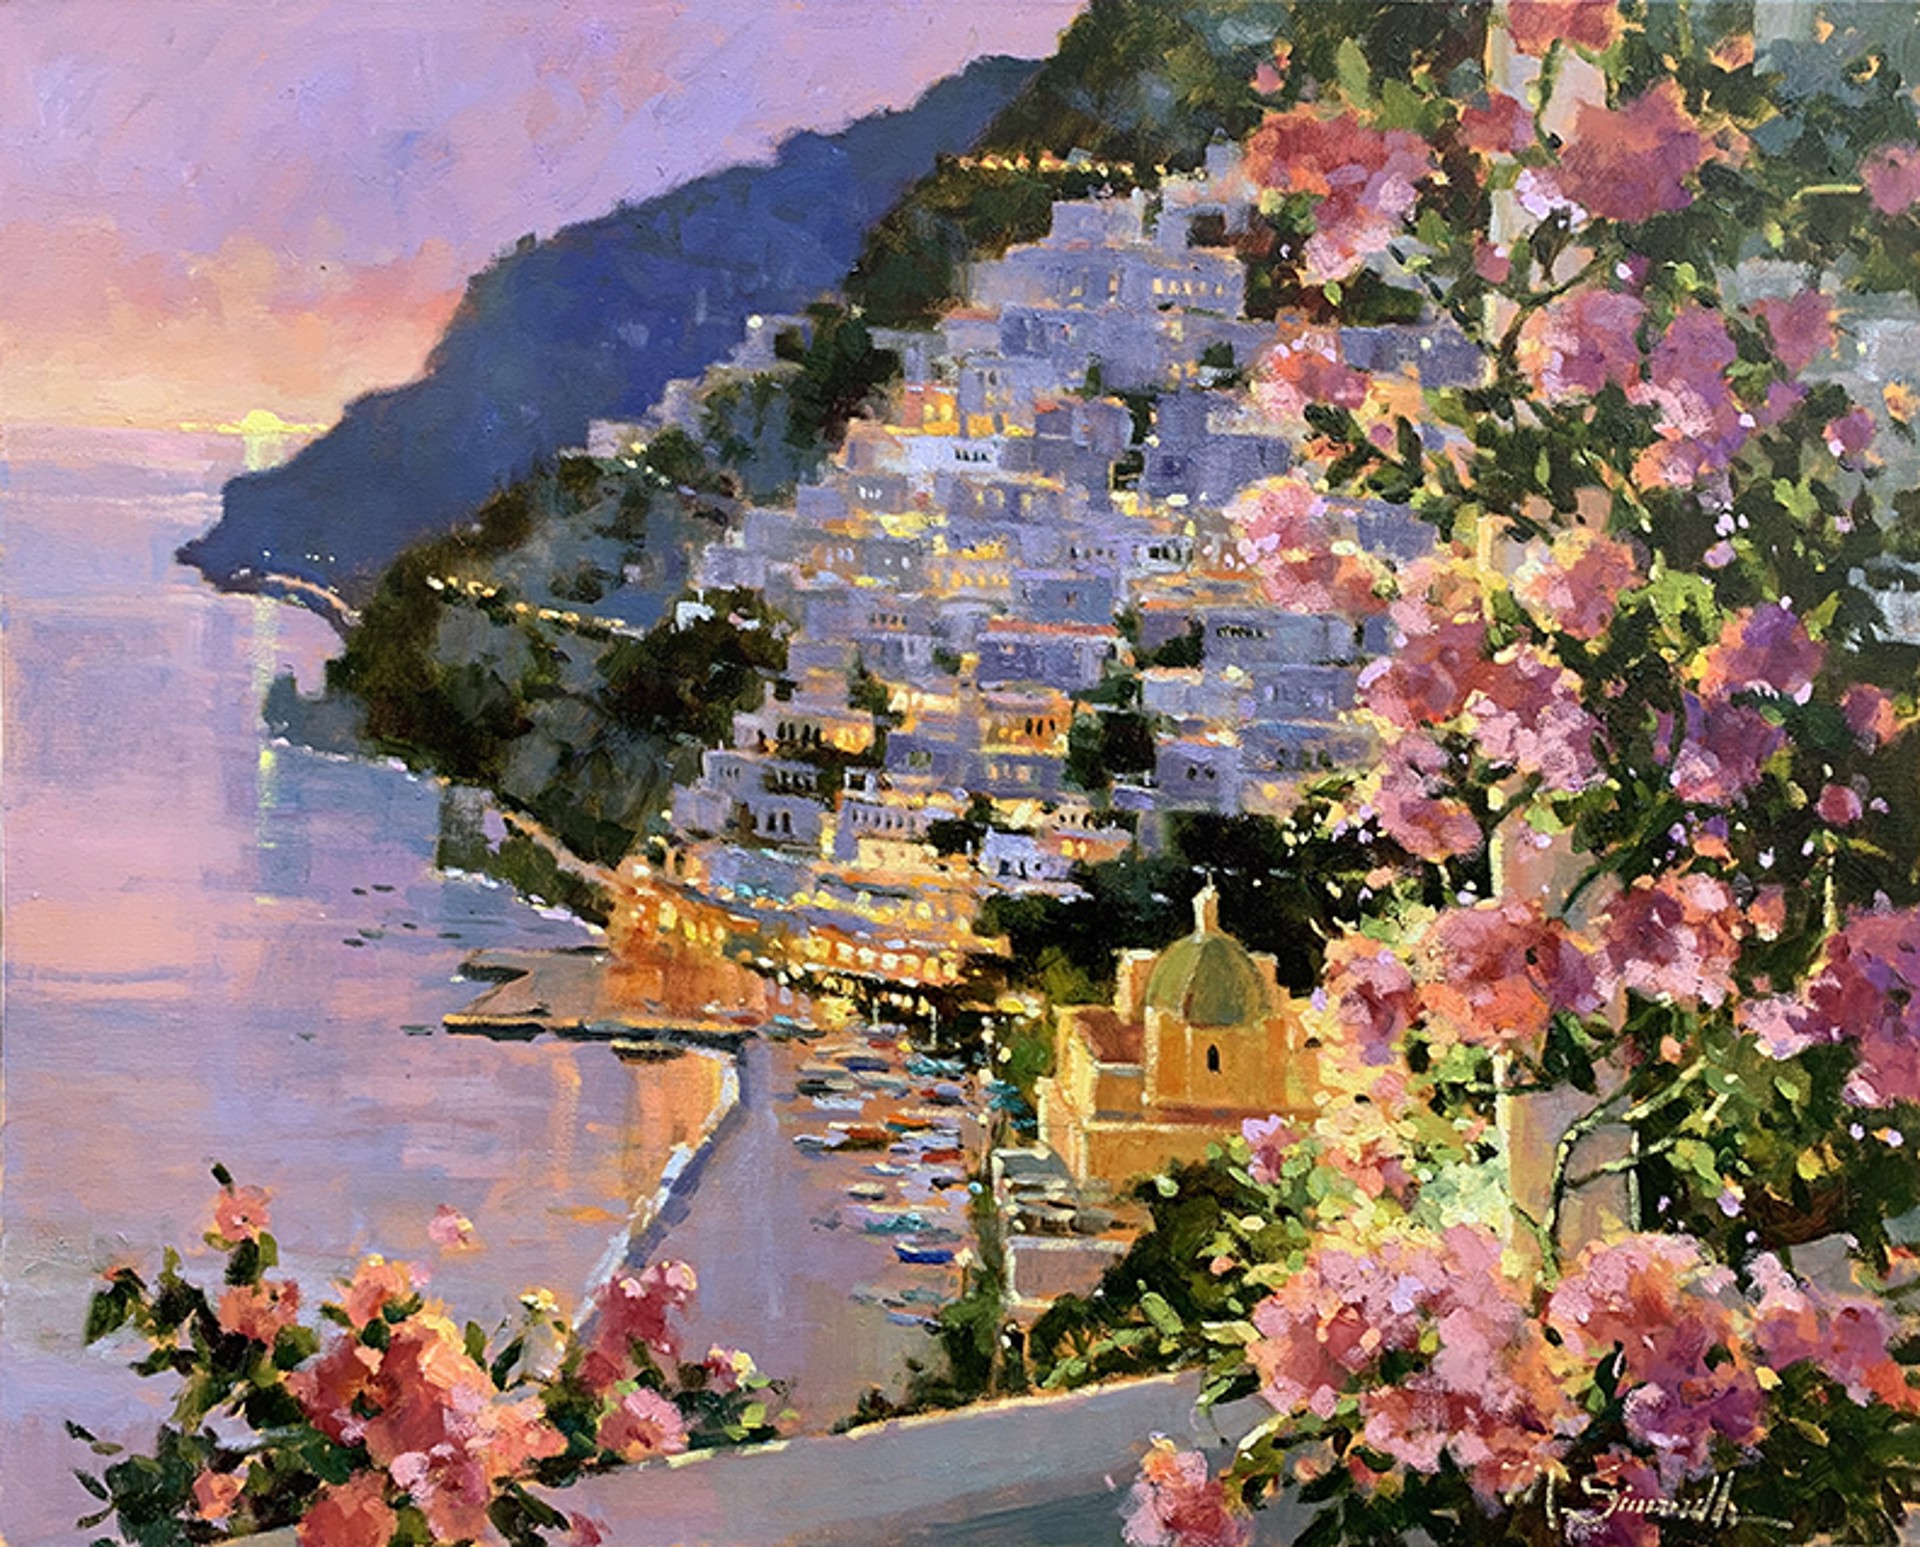 Dusk in Positano by Marilyn Simandle